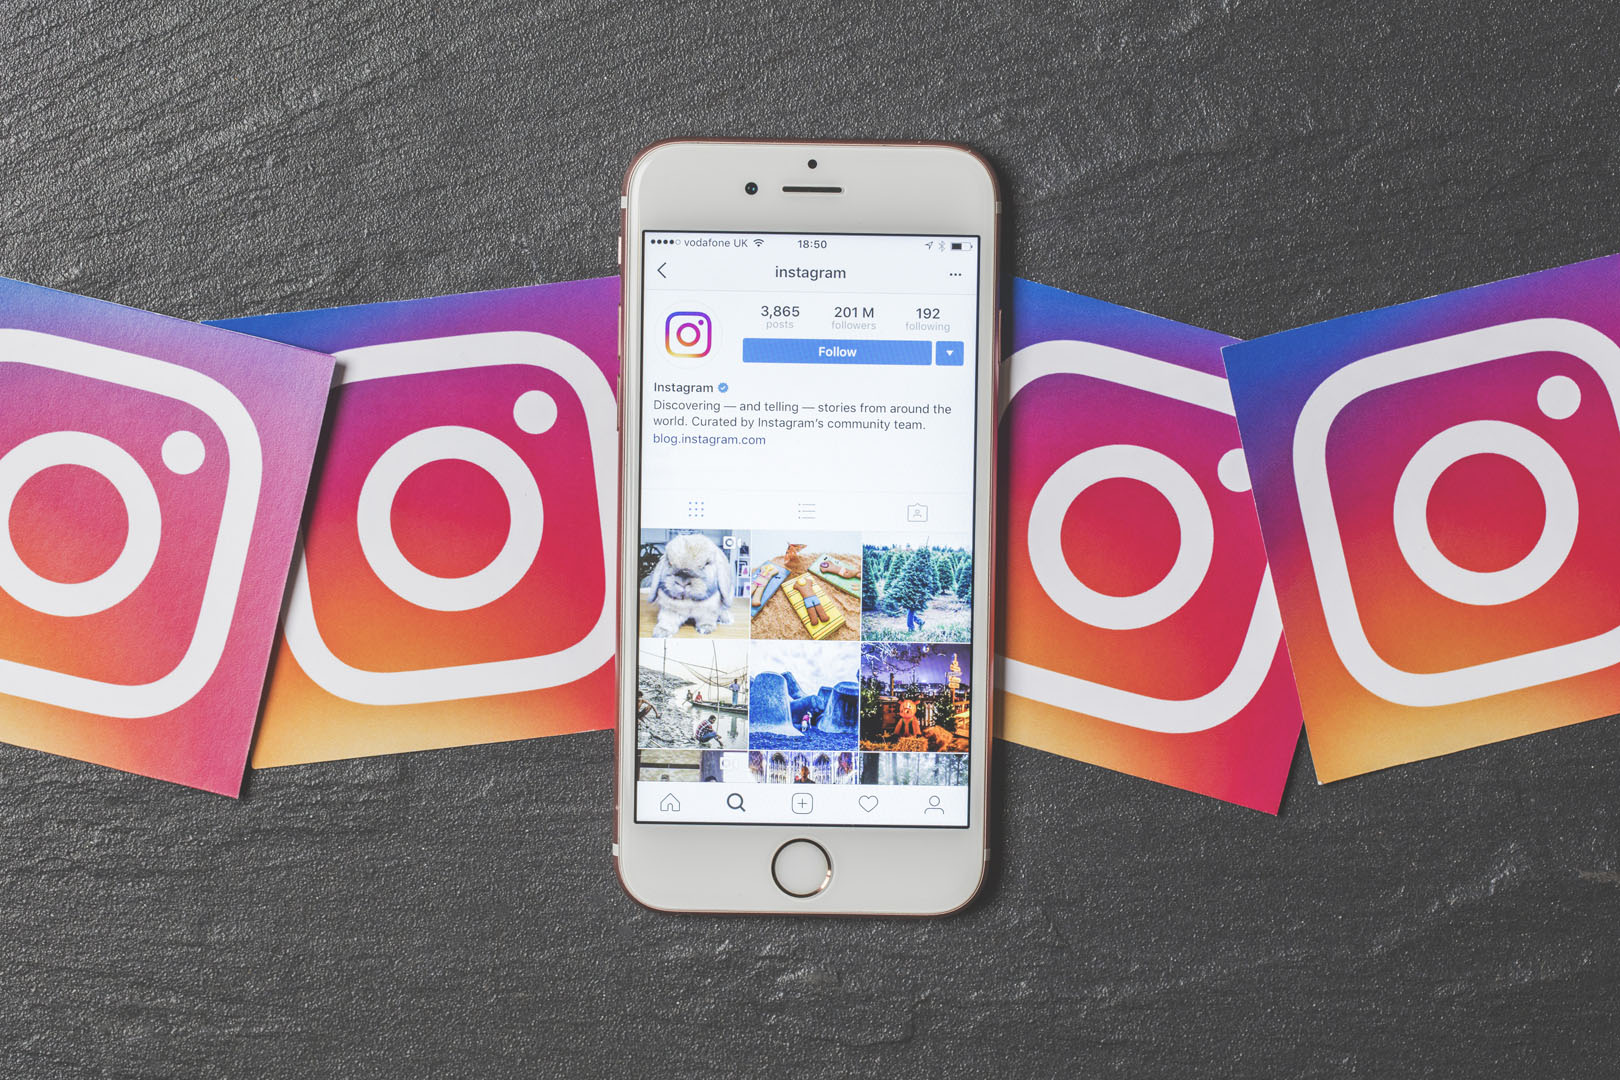 Sosyal medya kullanıcılarına yeni haber! Instagram’a 3 yeni özellik geliyor 